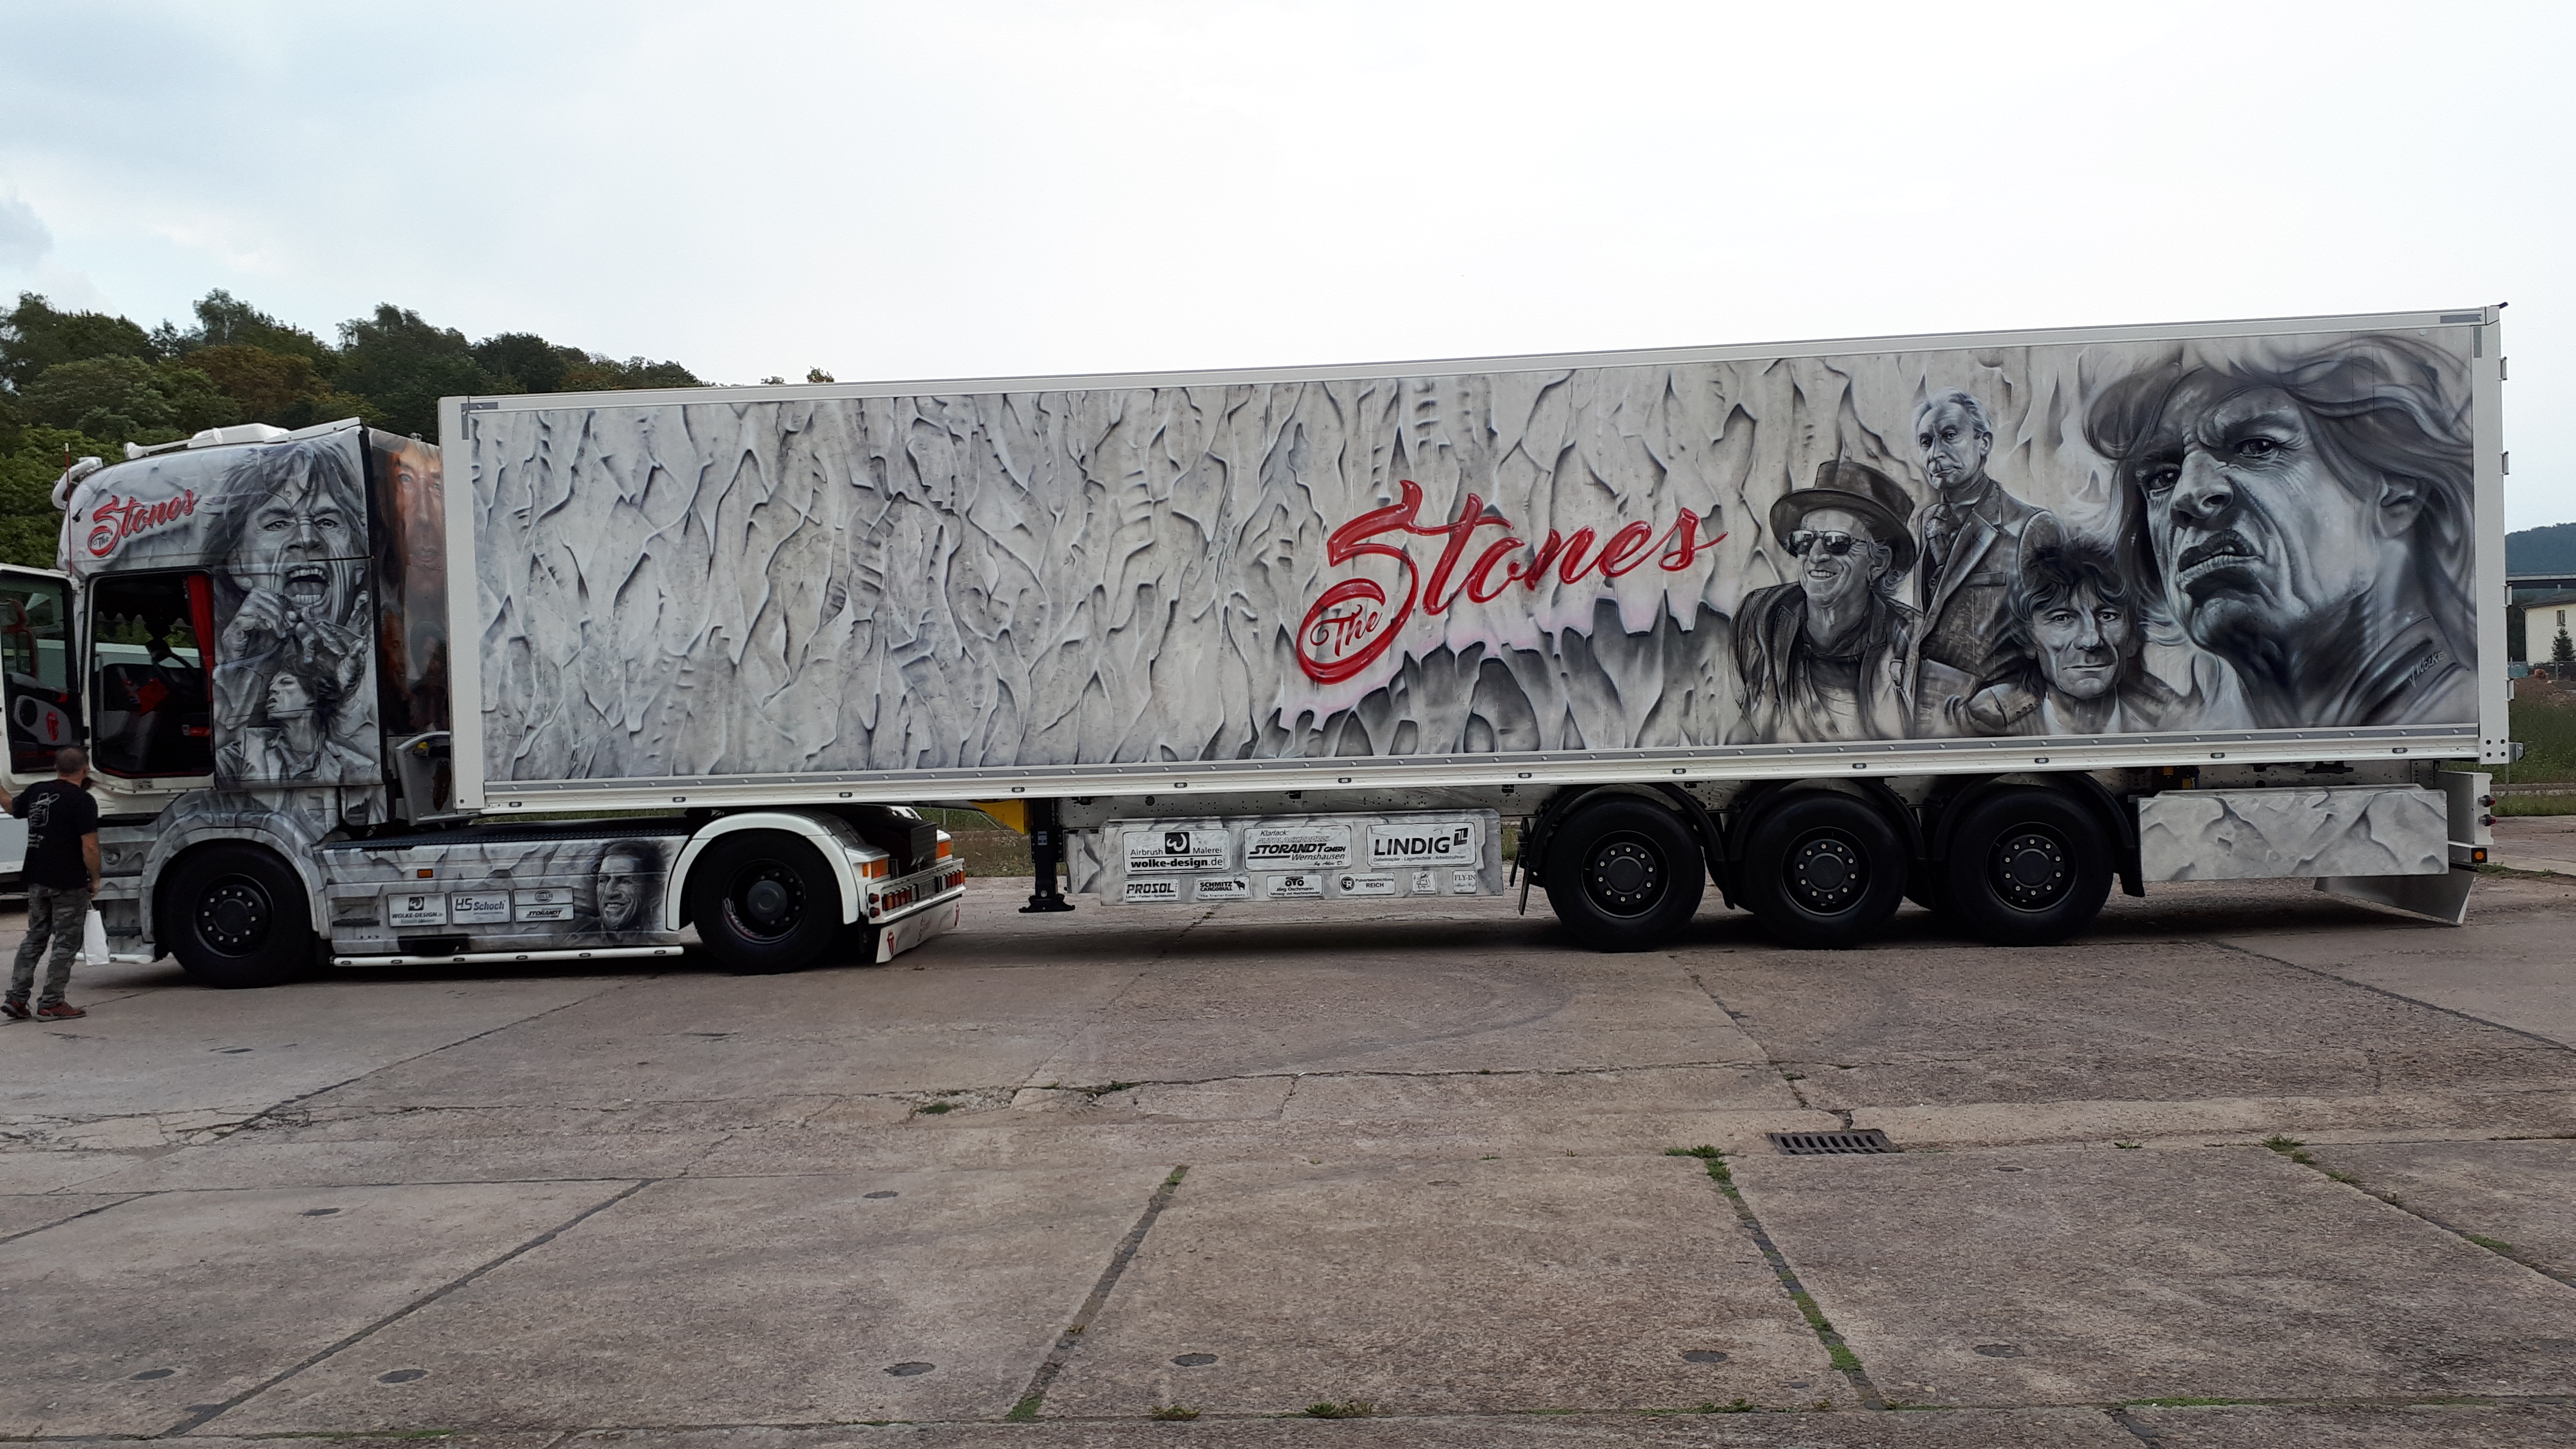 Bildergebnis für fotos vom stones truck mit aufleger